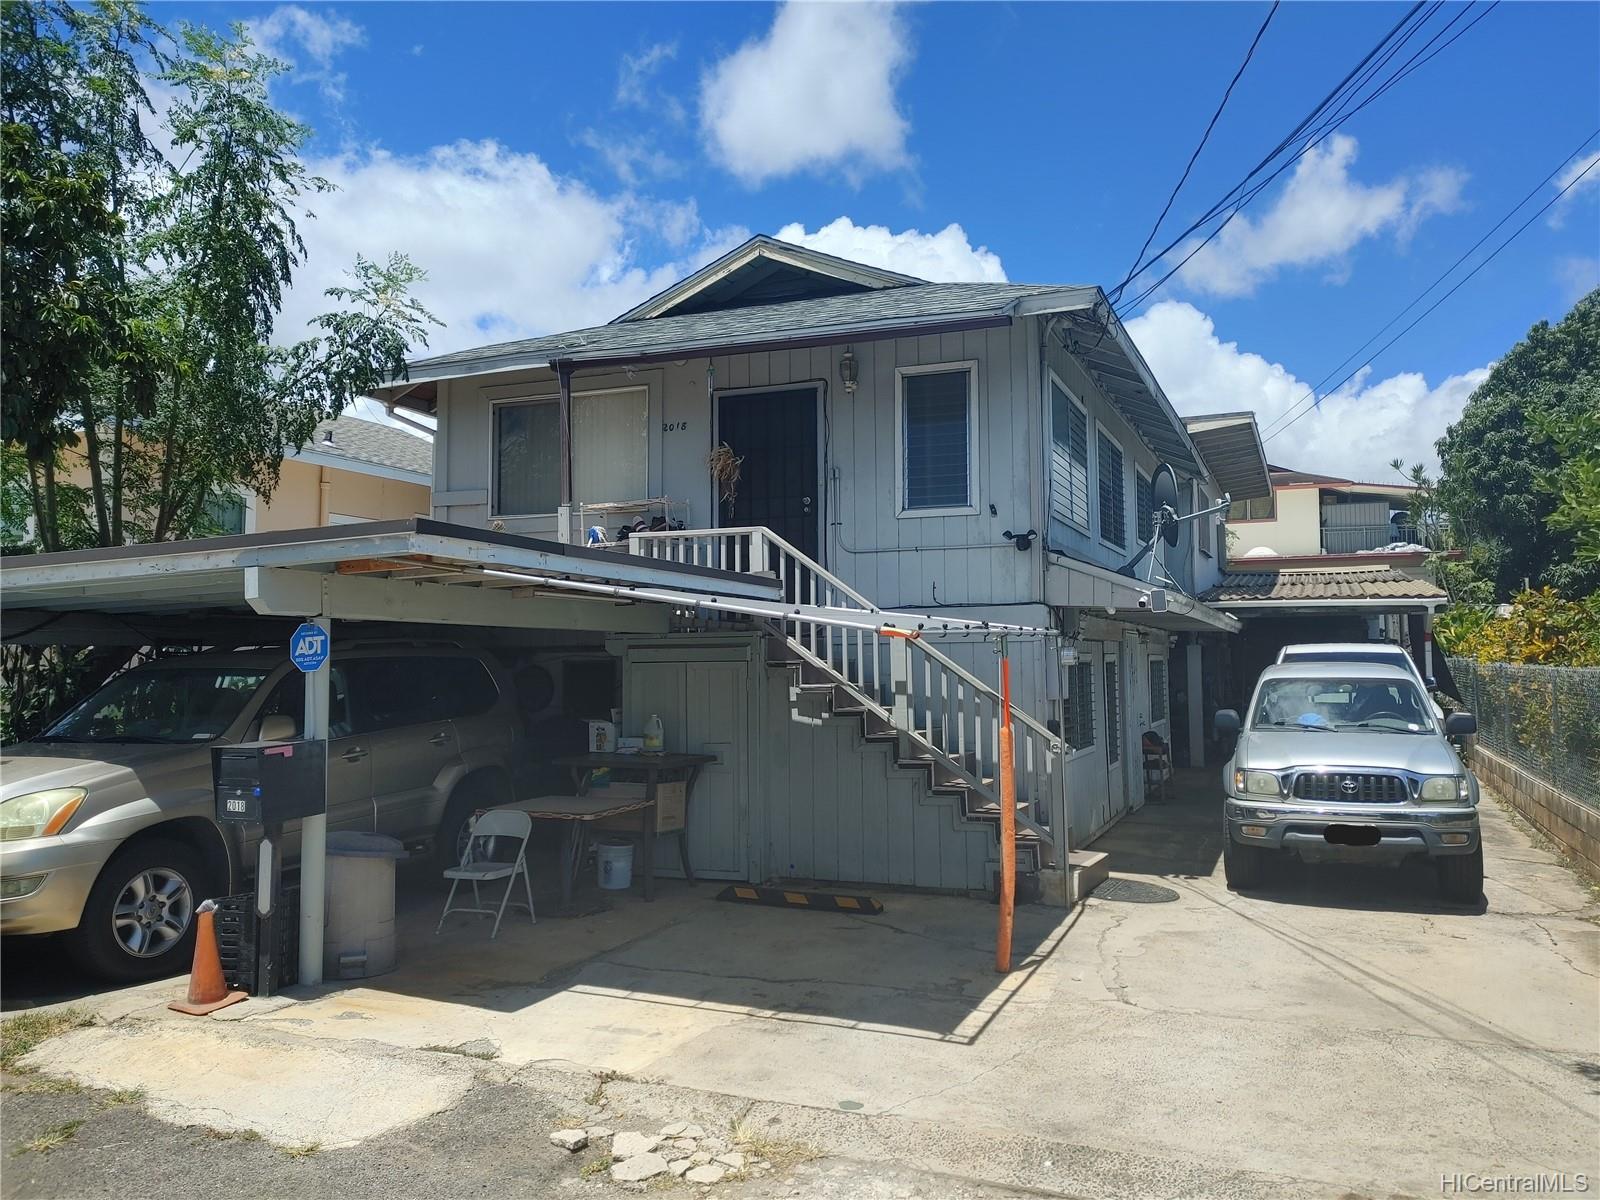  2018 Pahukui Street Honolulu, HI 96819